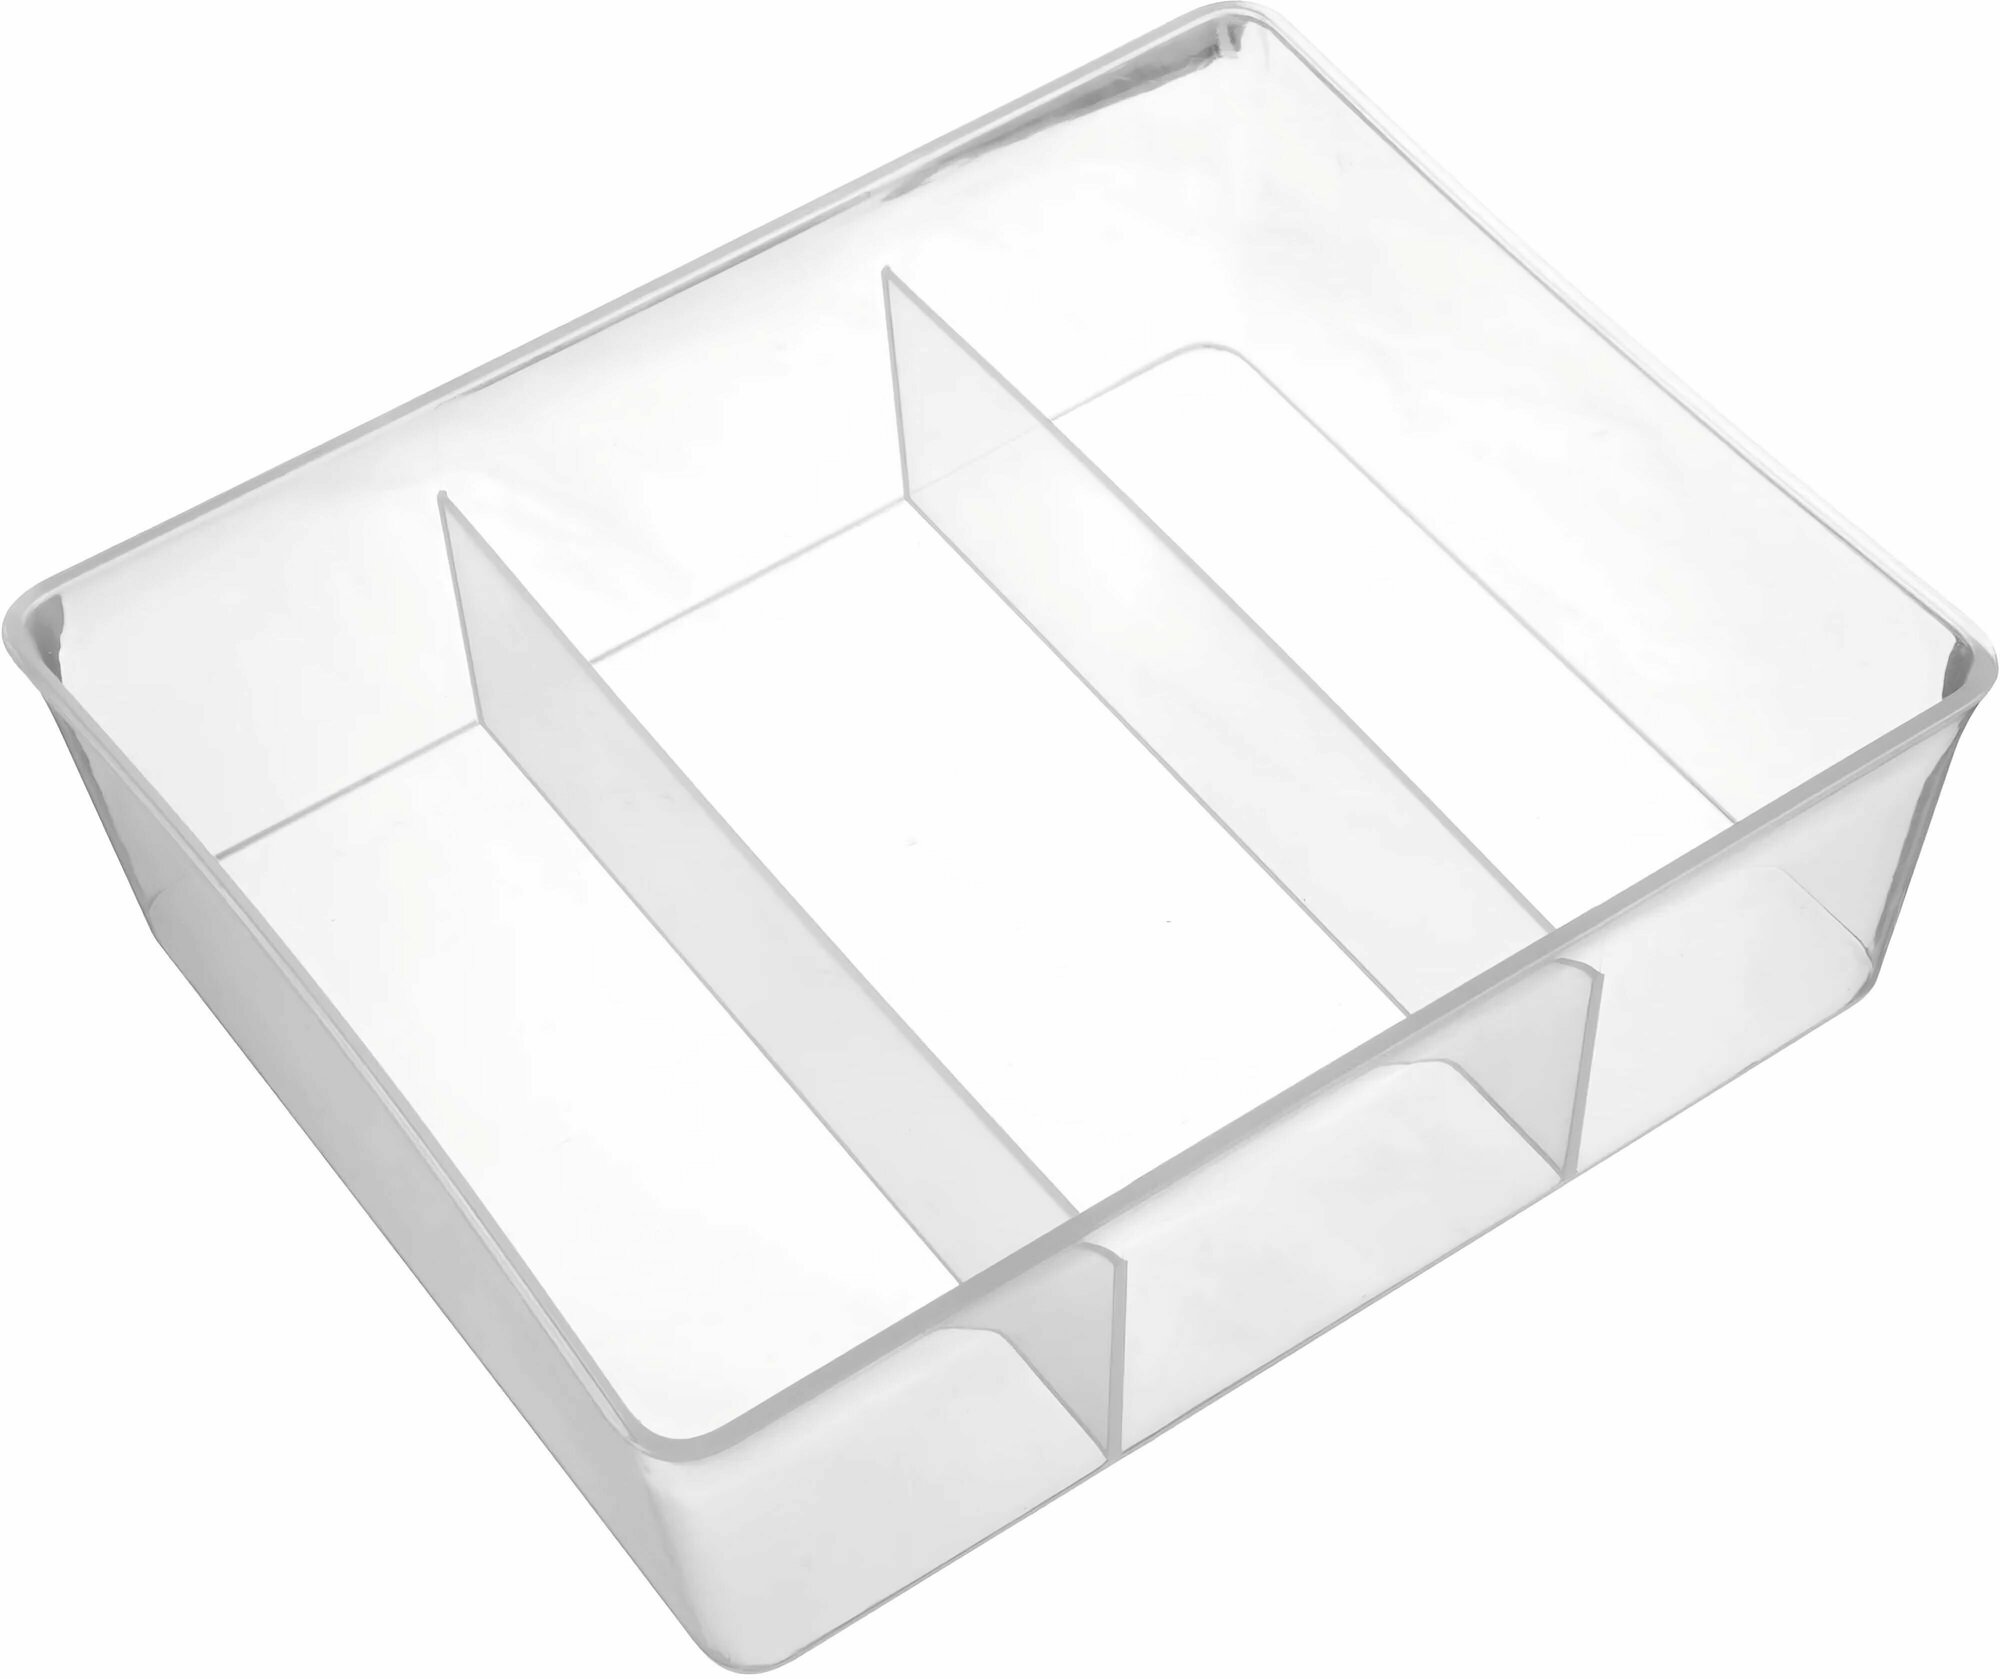 Лоток, 20x16x6 см: прозрачный, позволяет организовать пространство ящика для столовых приборов